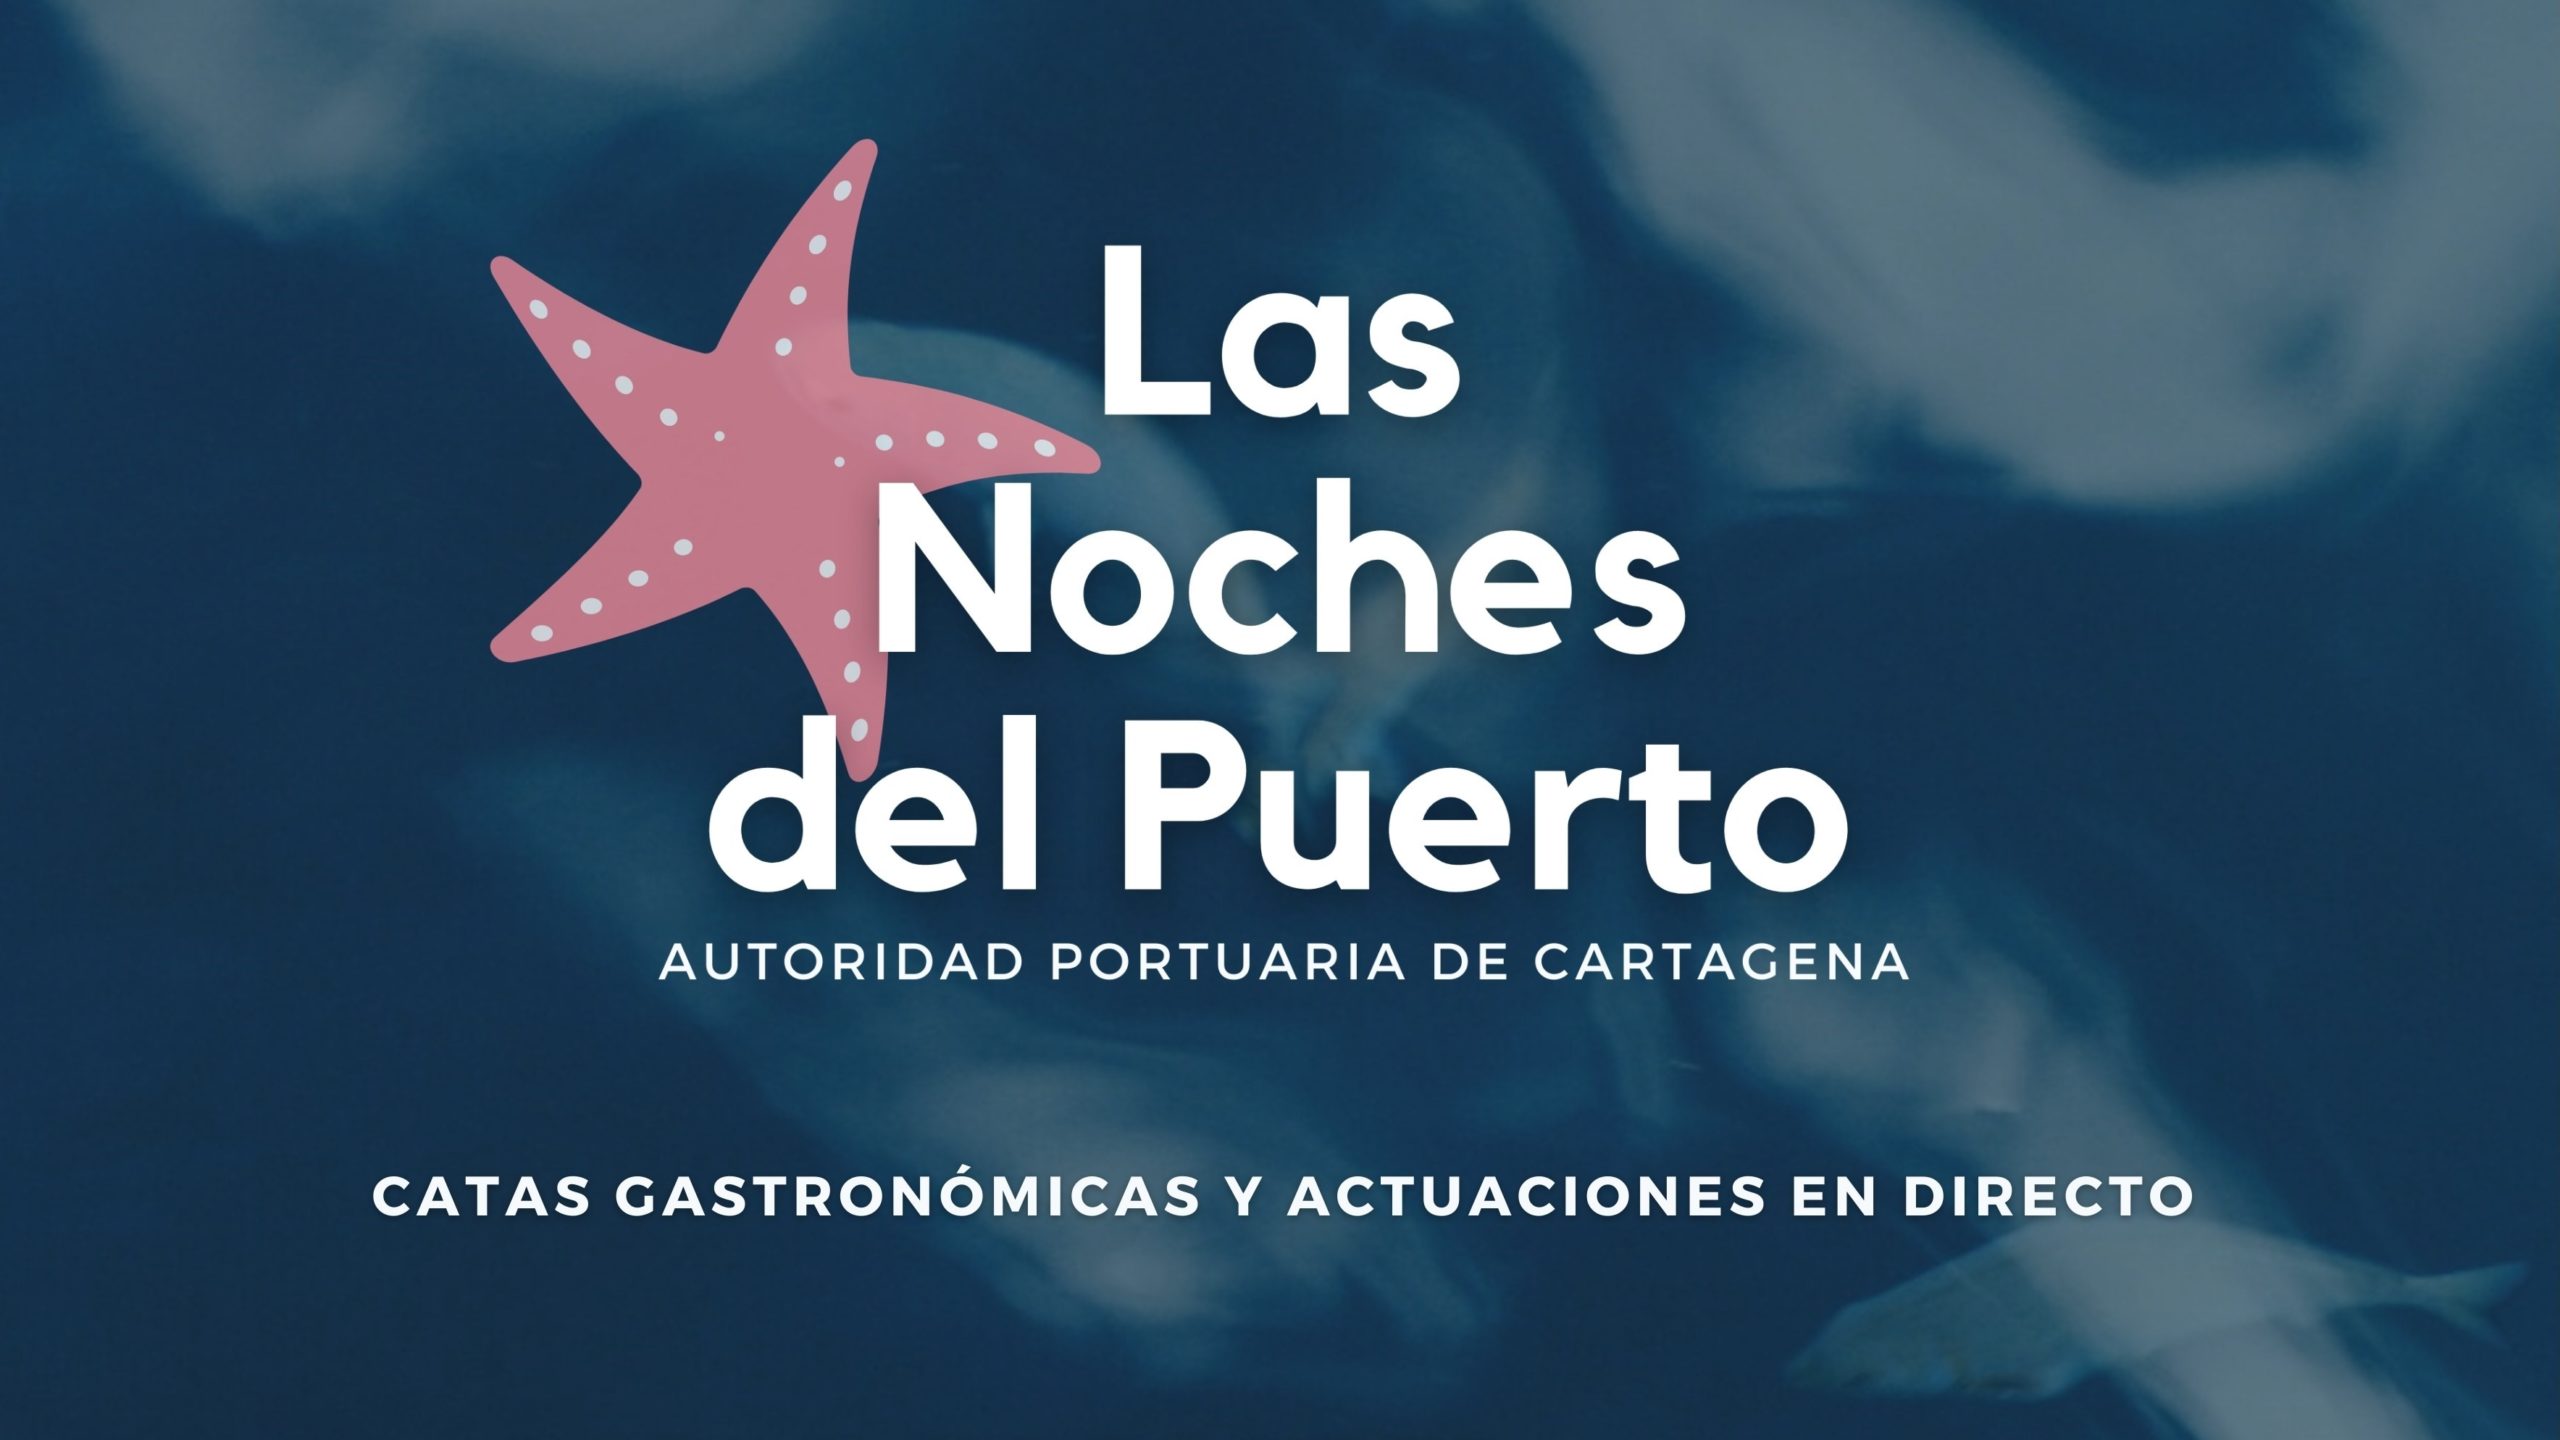 Gastronomía y conciertos ocupan los jueves de verano de Cartagena con “Las Noches del Puerto”